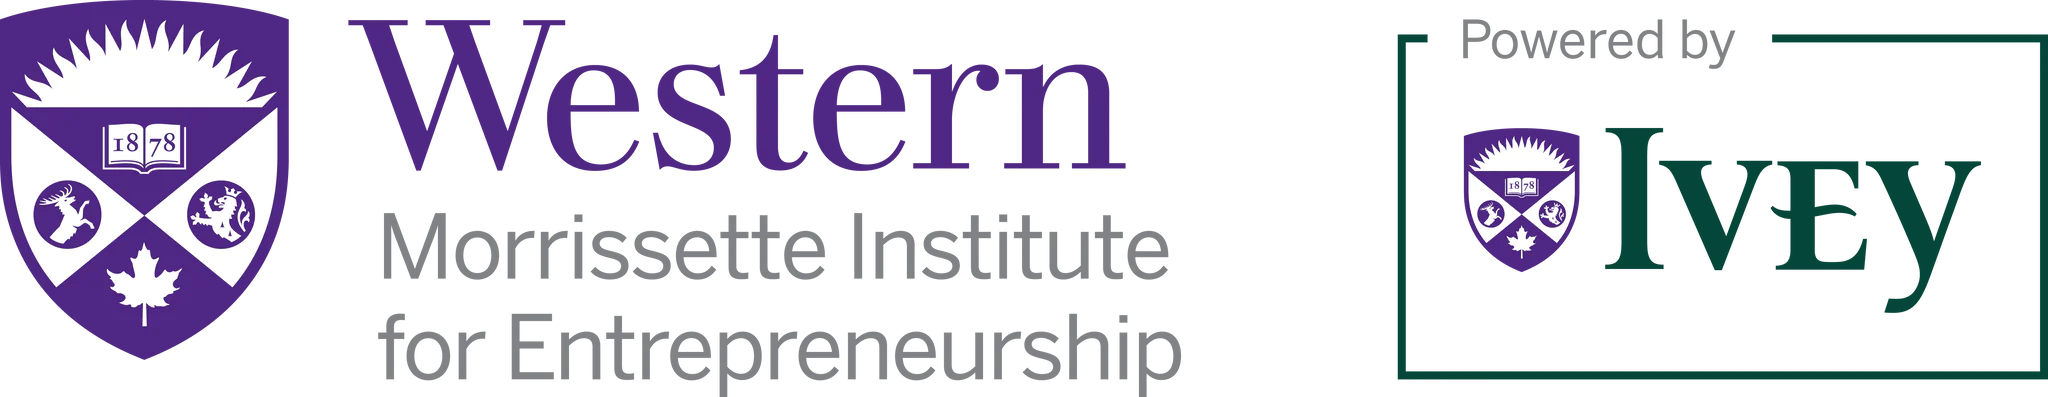 morrissette institue for entrepreneurship